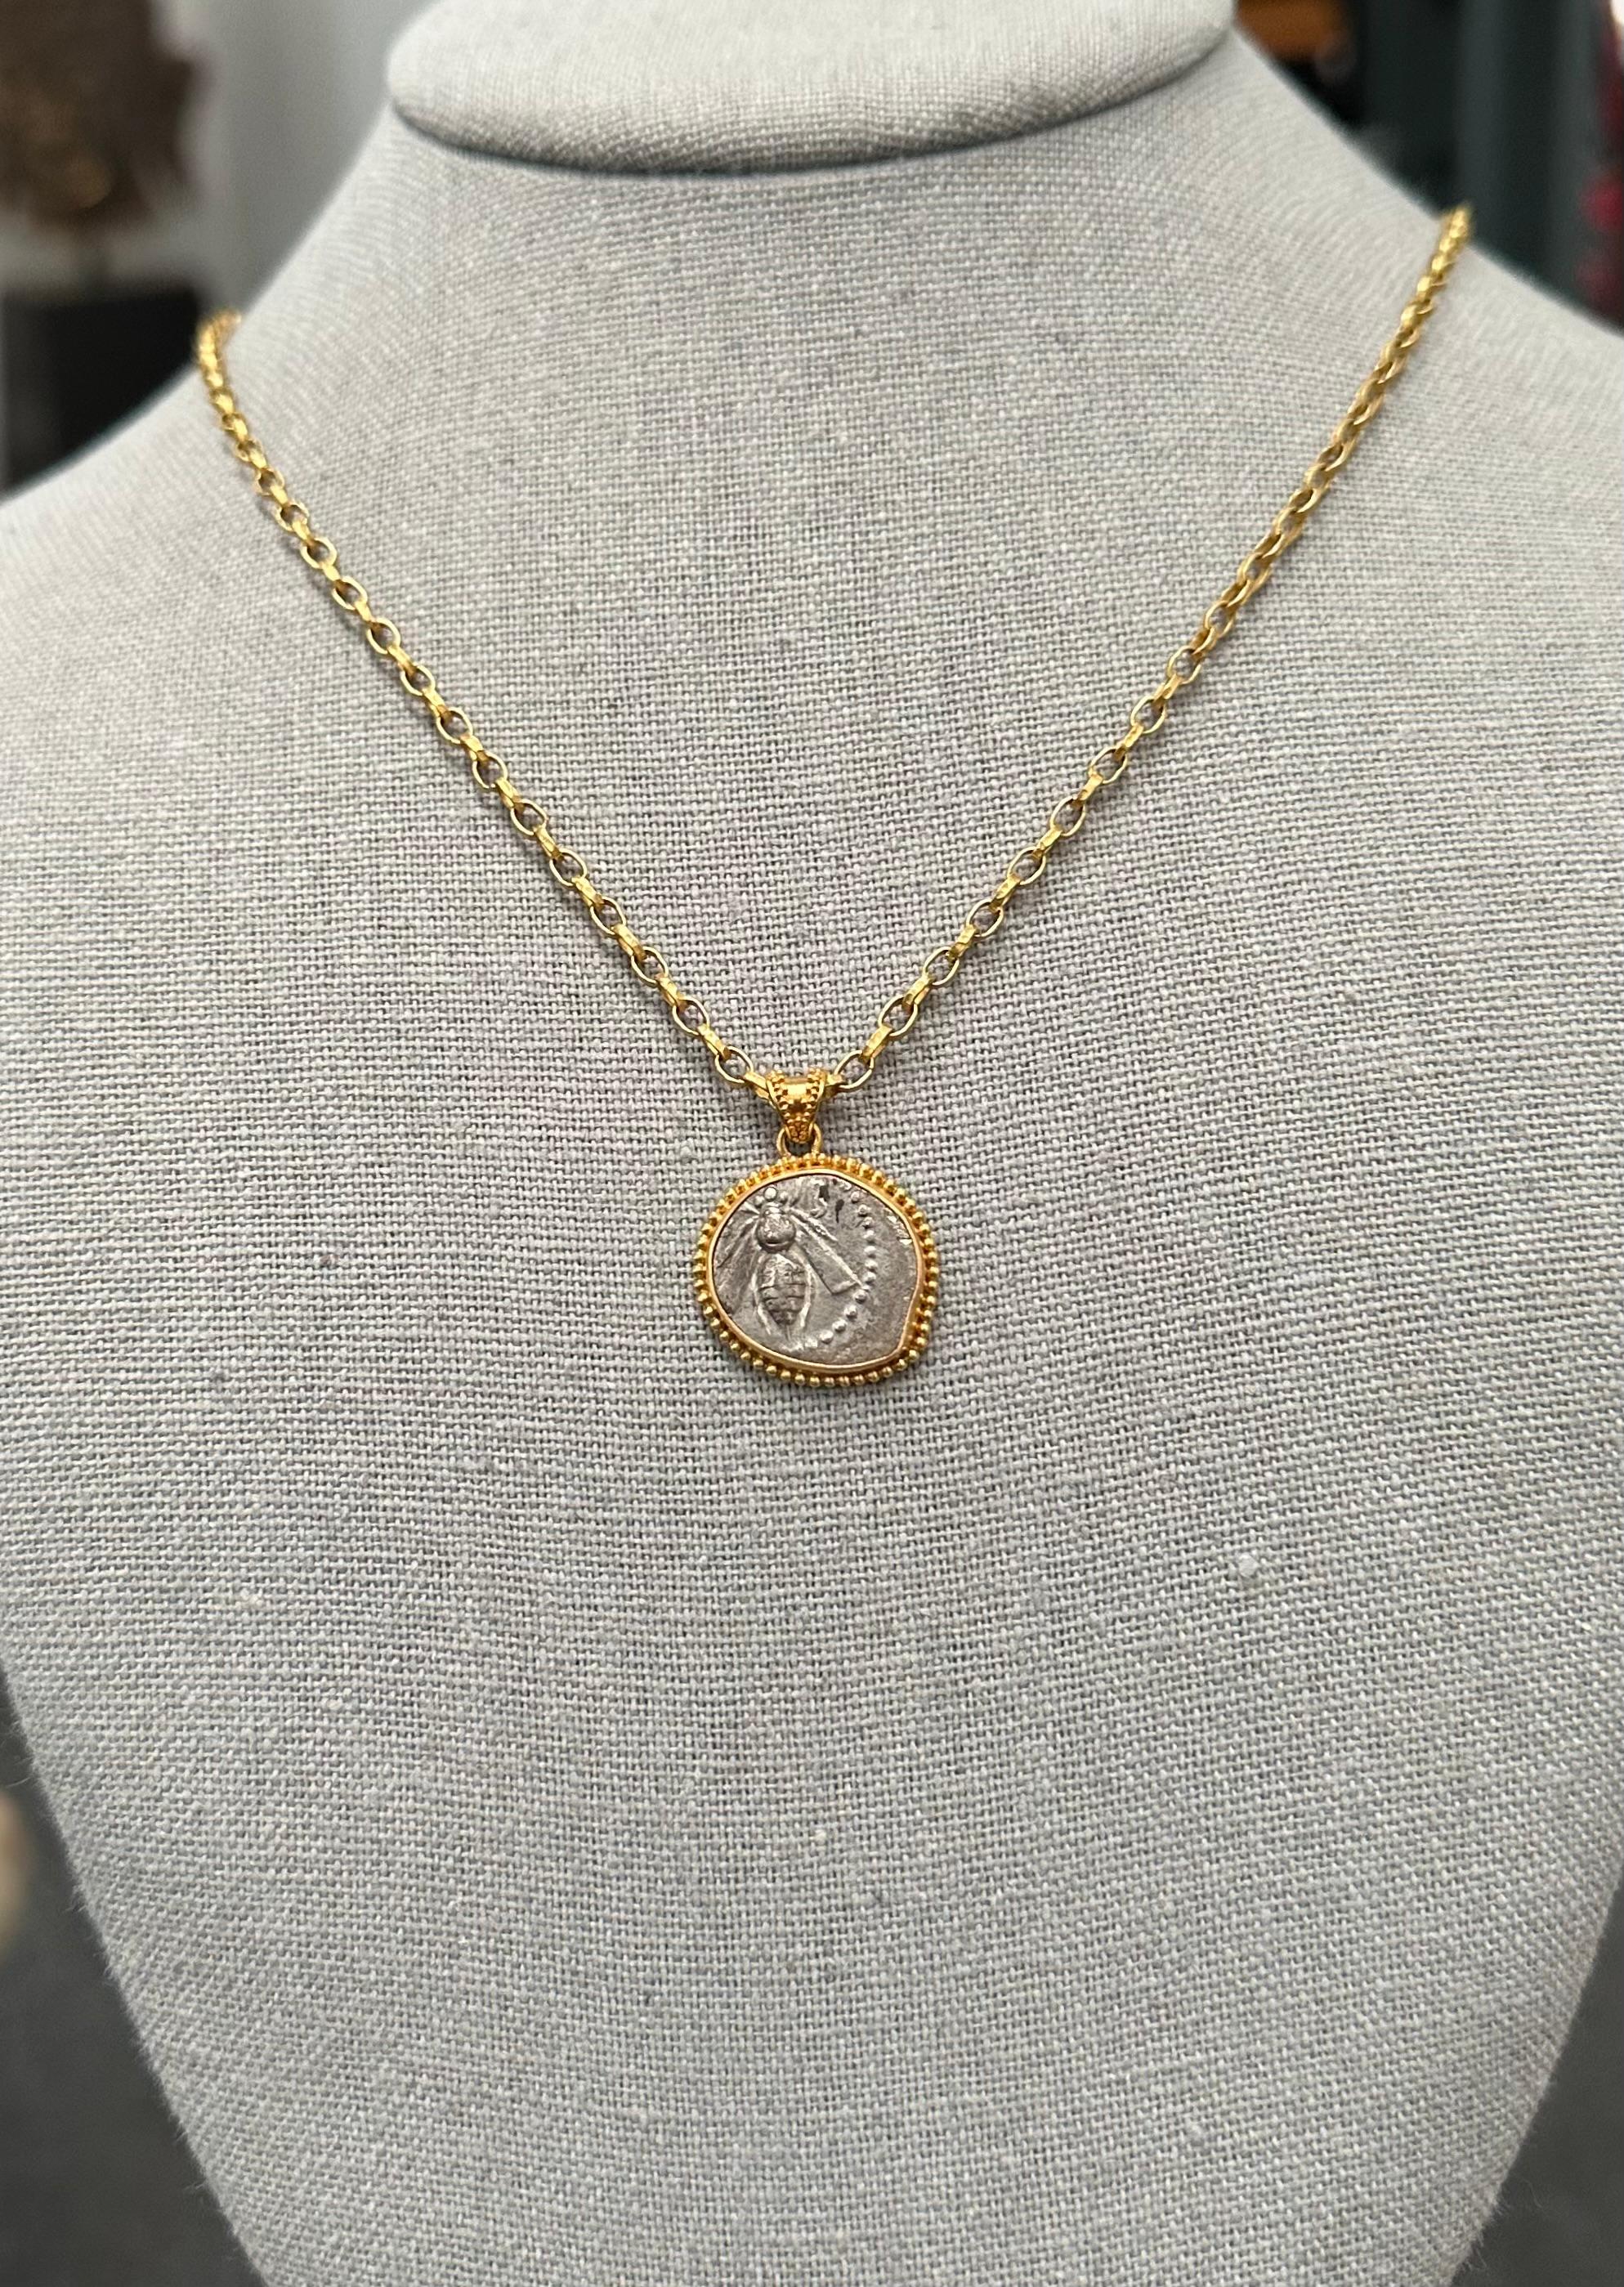 22k gold pendant necklace